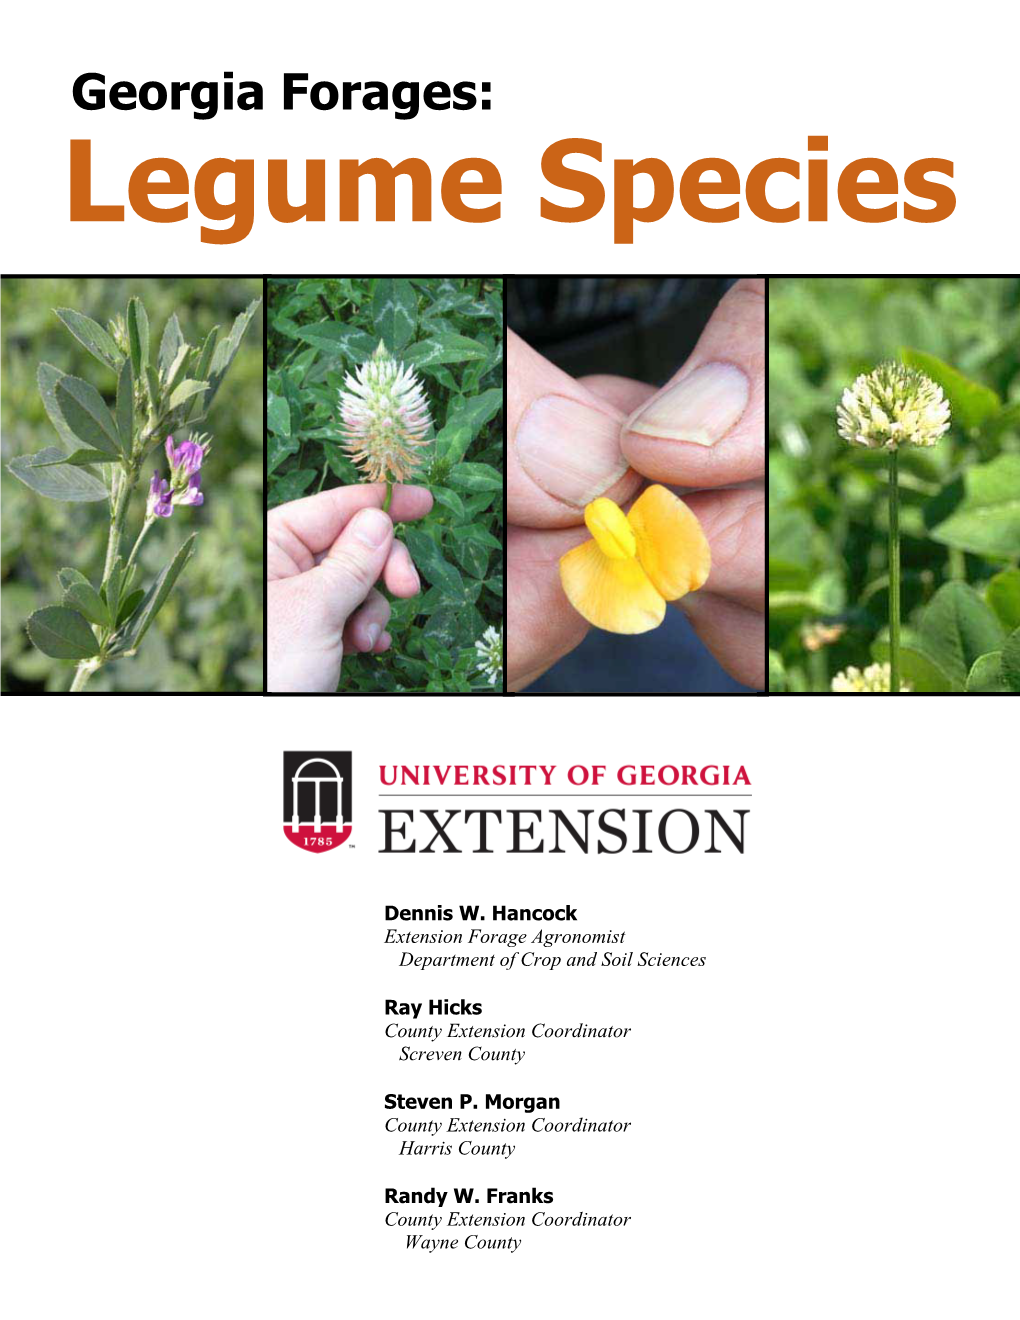 Georgia Forages: Legume Species